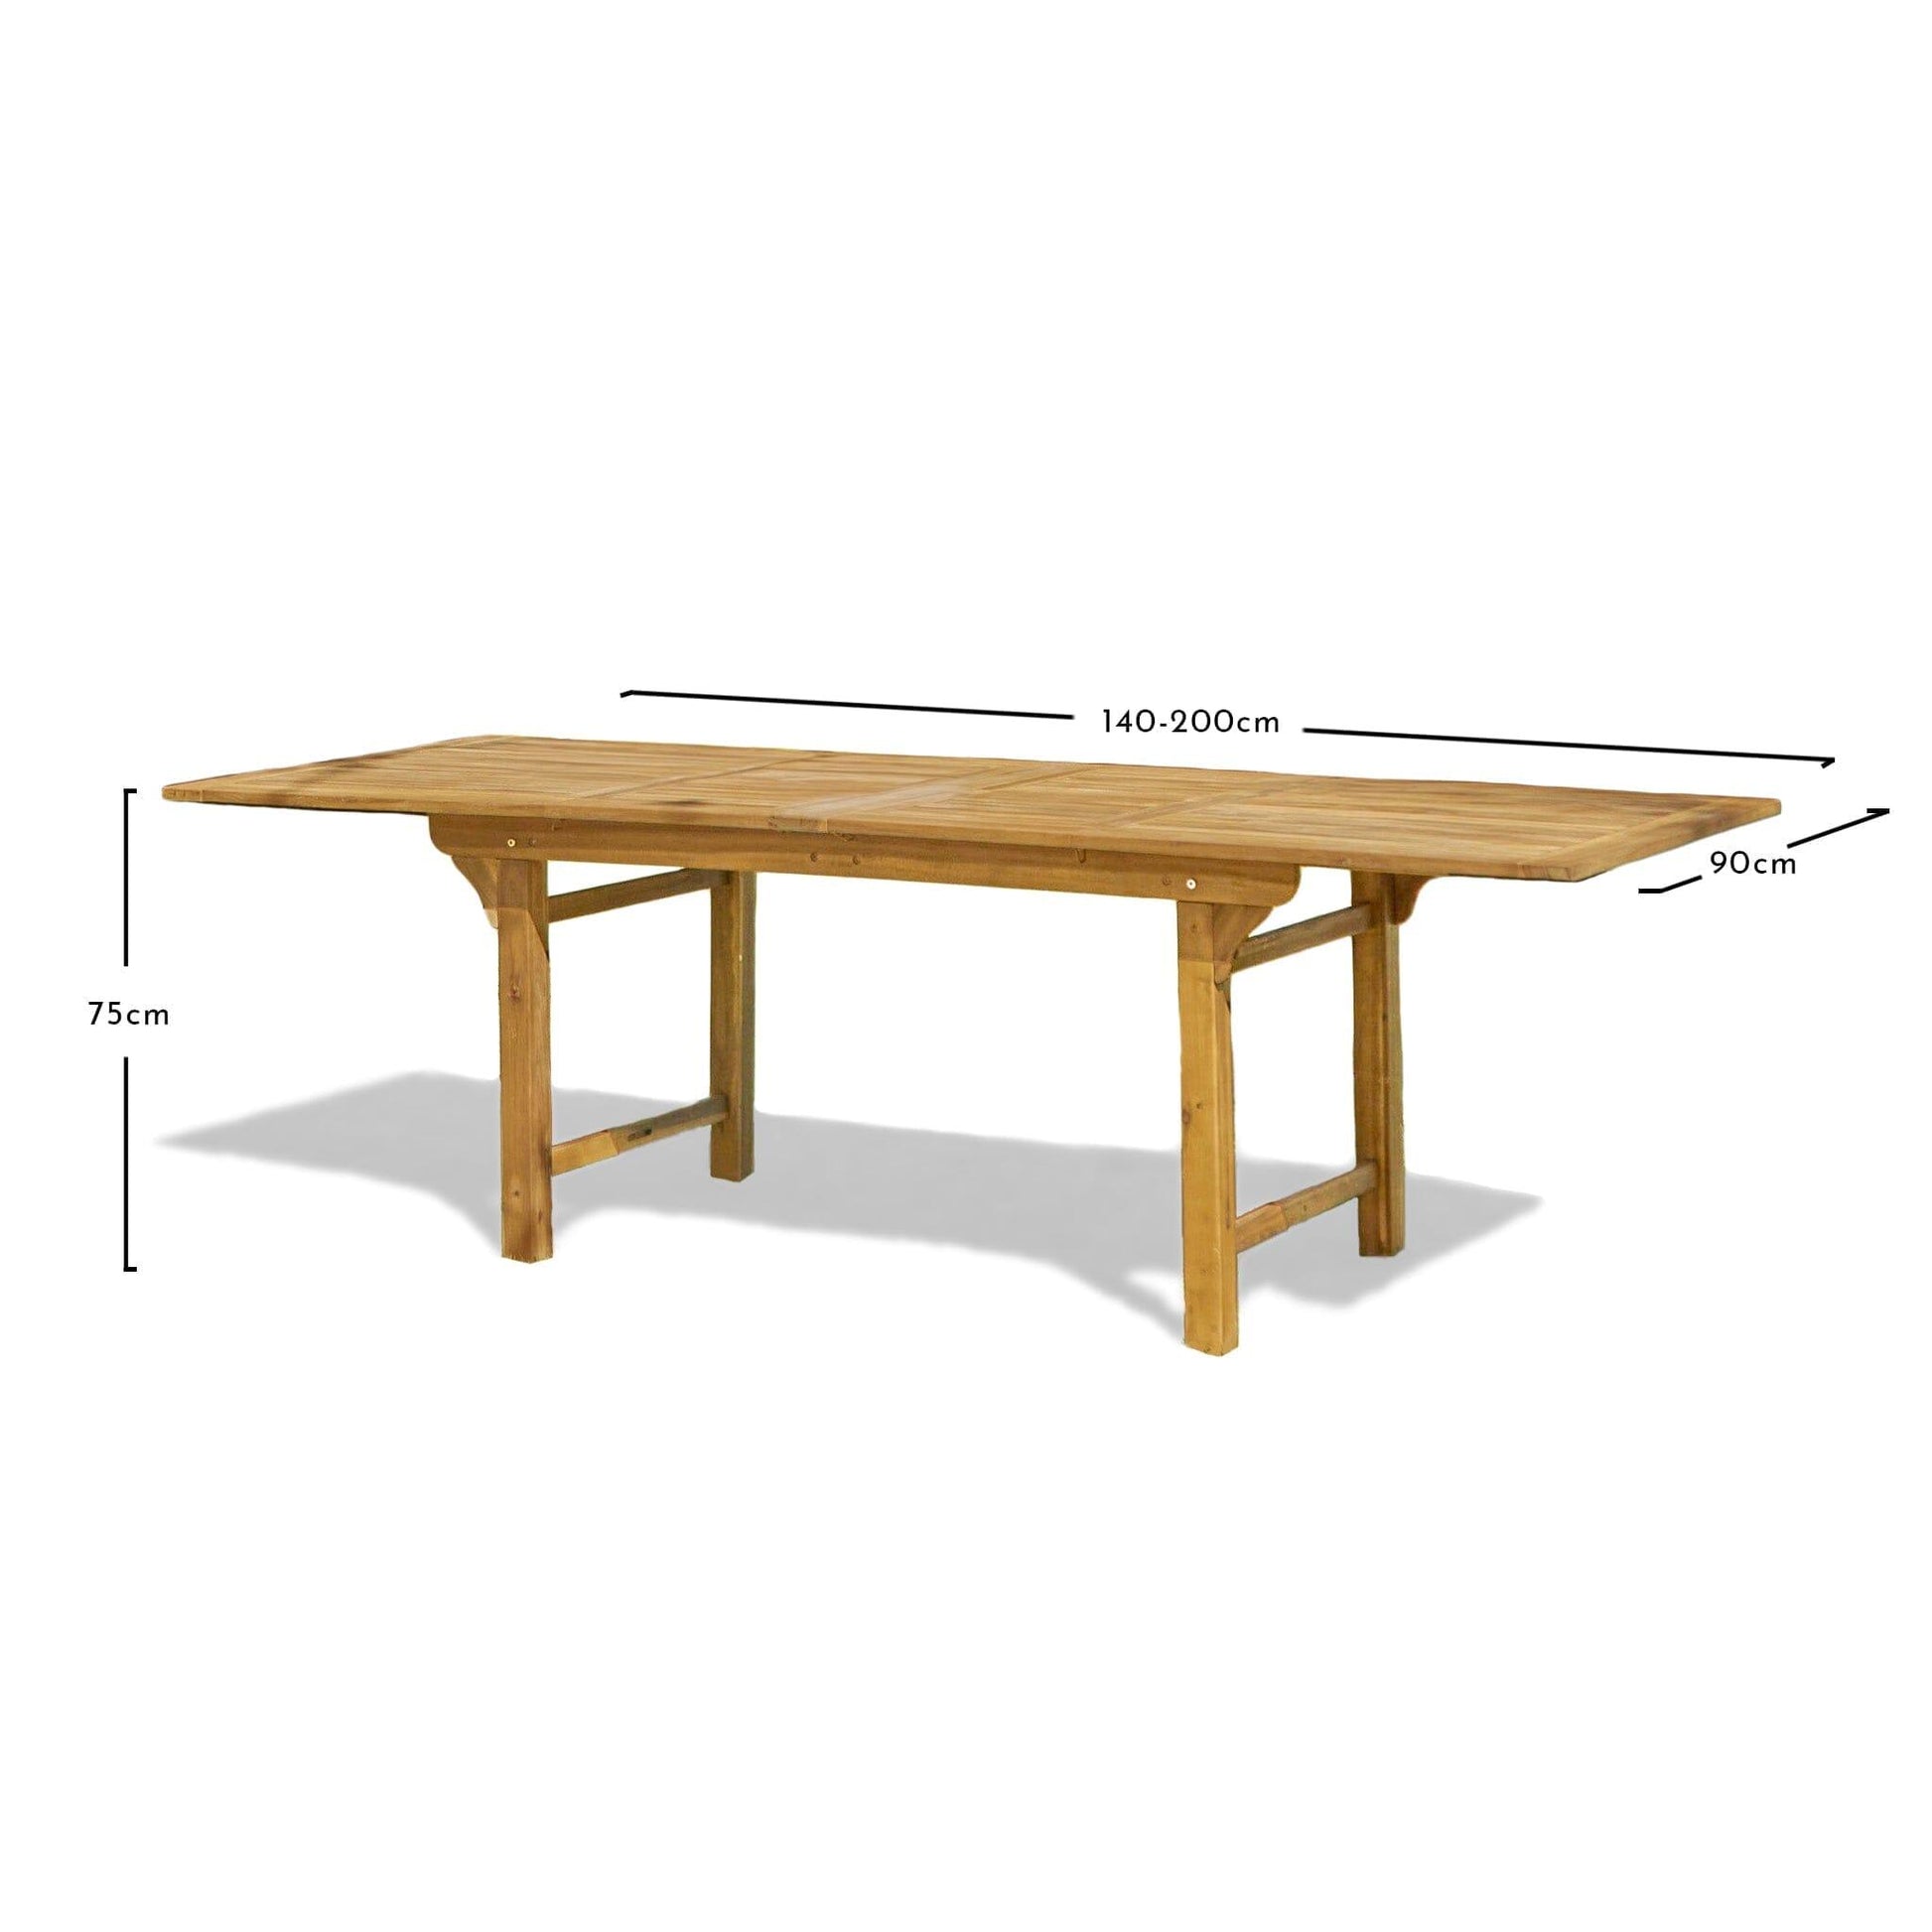 Aspen 4-8 Seater Extending Wooden Dining Table